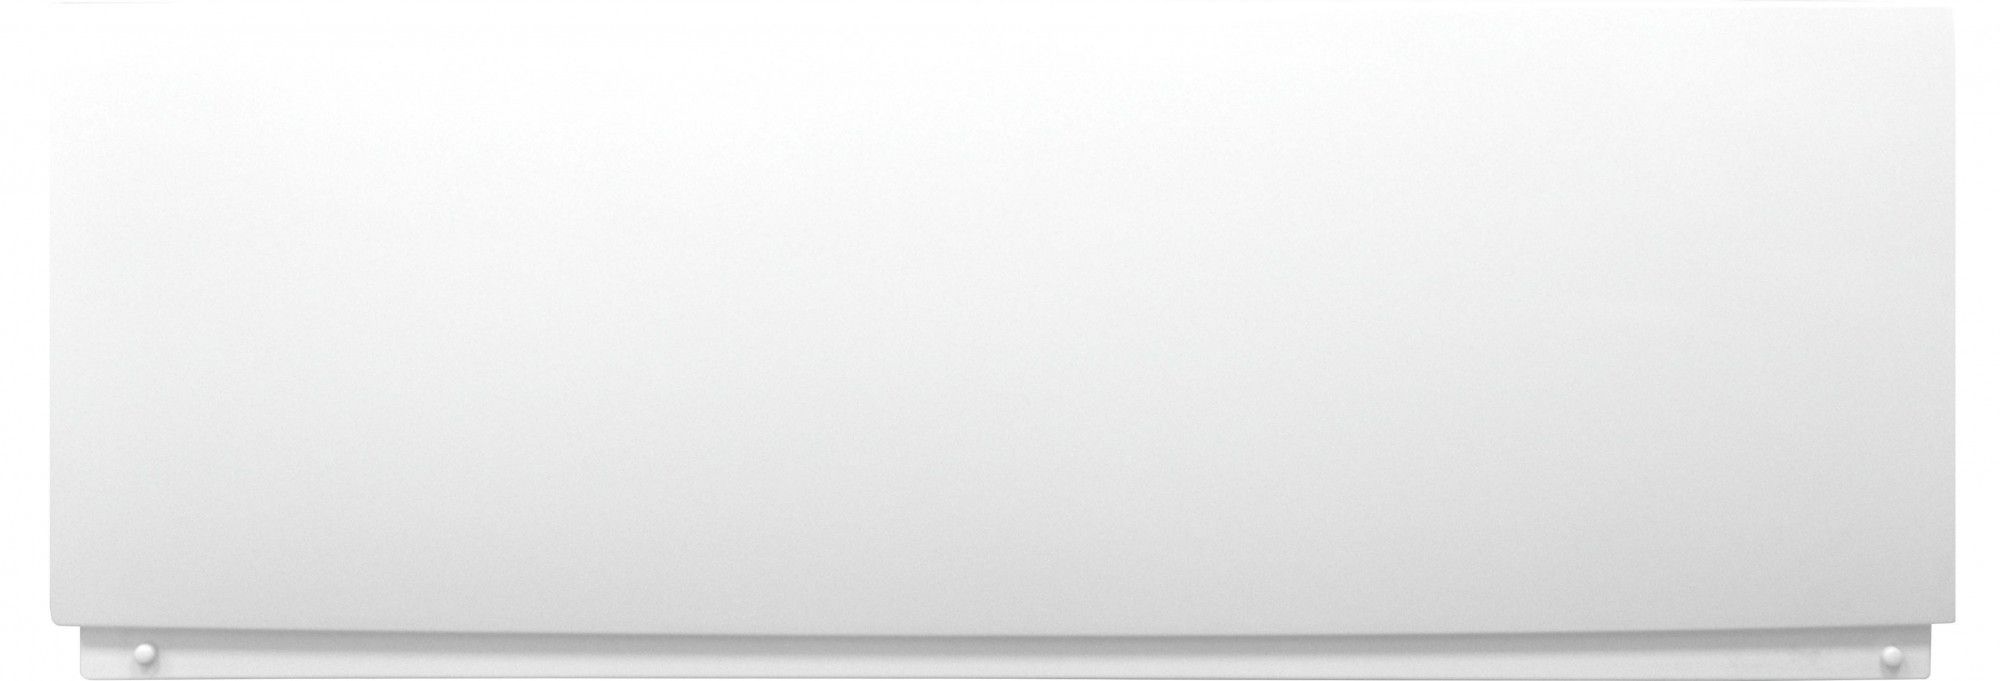 Фронтальная панель1600 к ванне Лоранто Арктика, Novaro La, ABS пластик, белый (CS00031202)